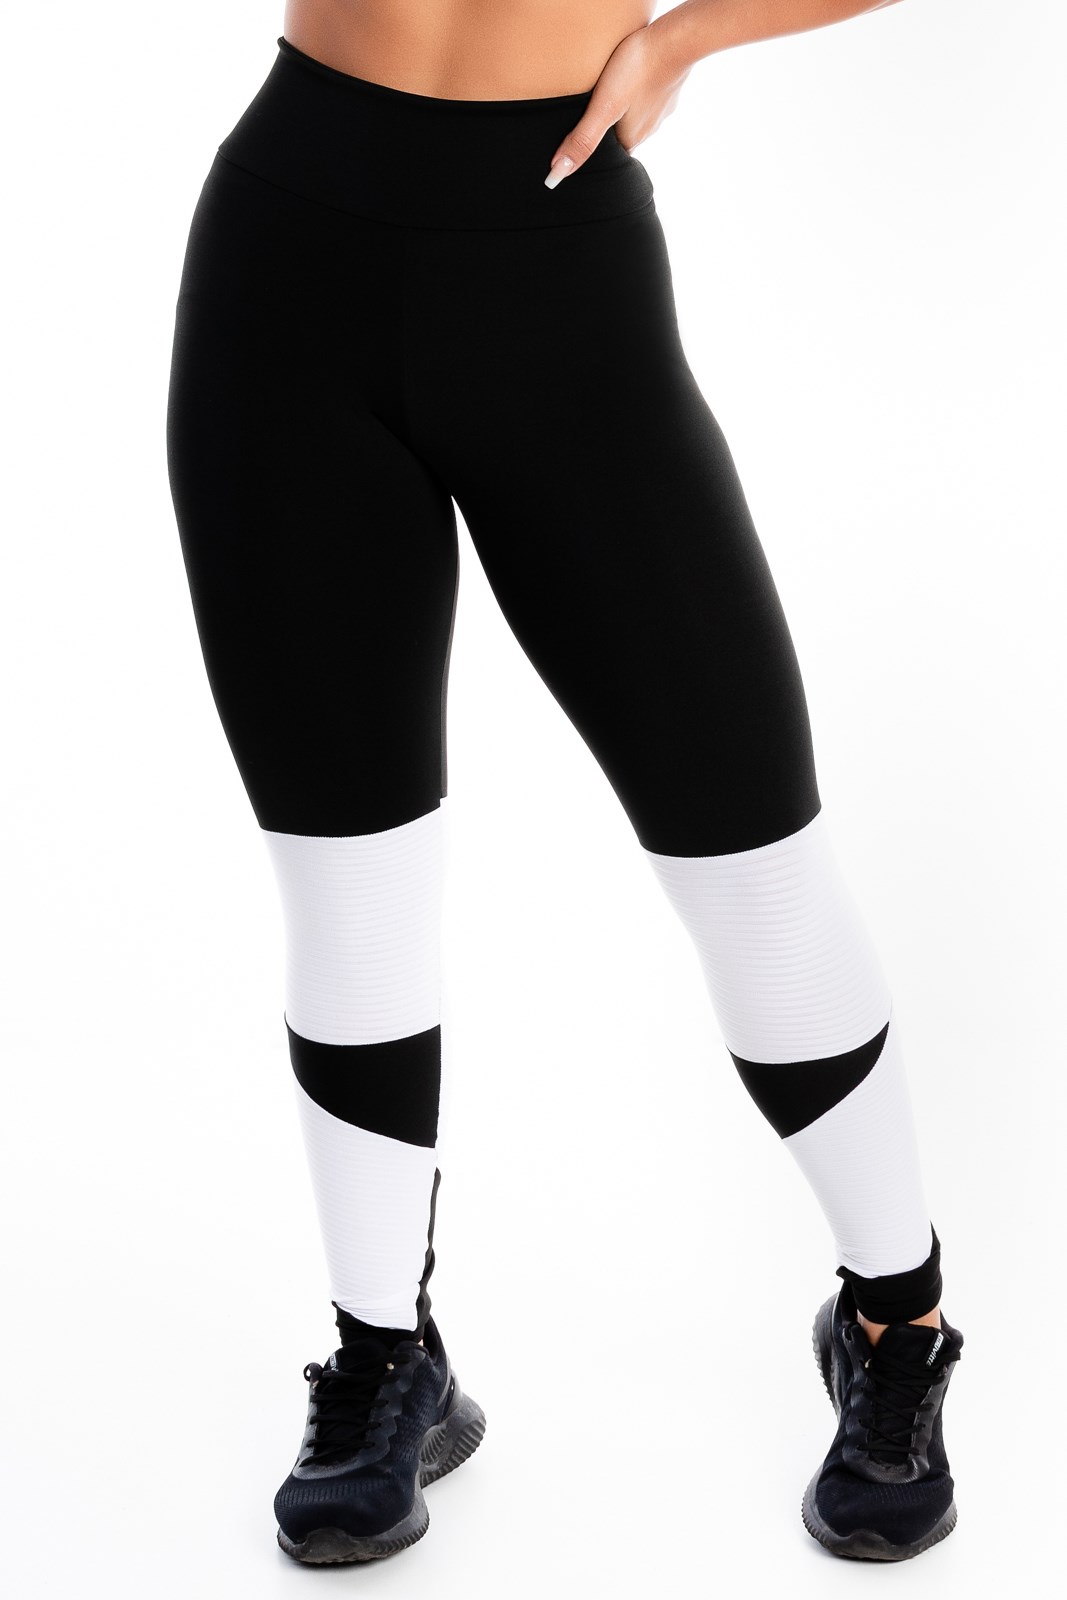 Calça Legging Fitness Academia Preta com Detalhe Lateral em Vivo Branco  Cintura Alta REF: SV36 - Racy Modas